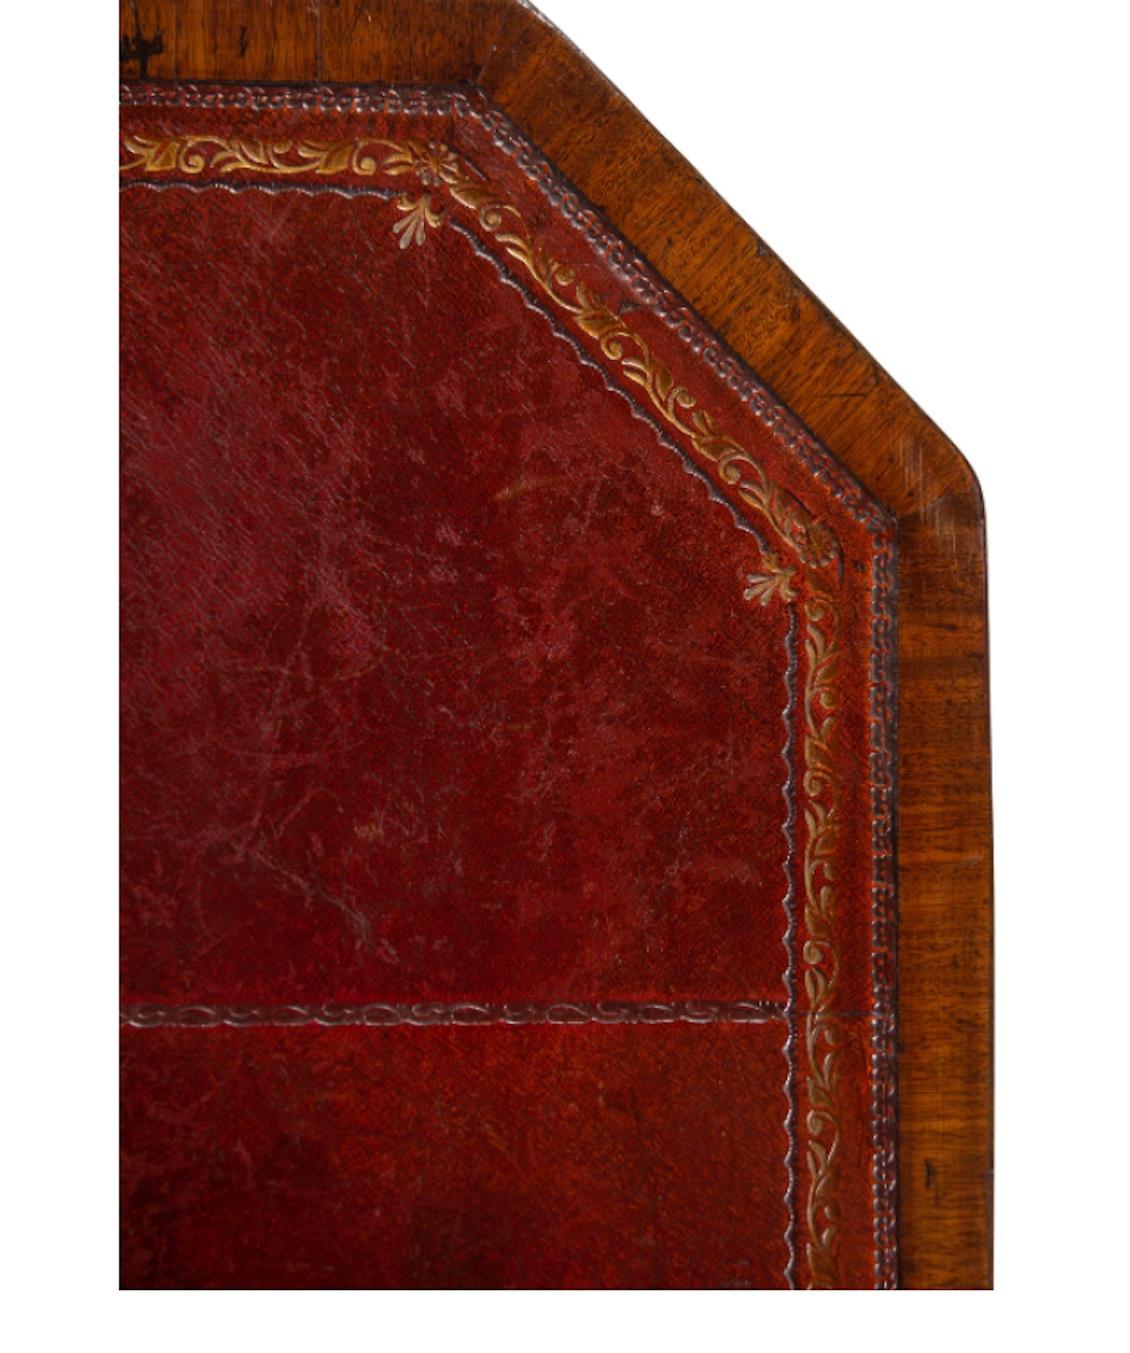 Ein Mahagoni-Schreibtisch aus George III
19. Jahrhundert mit zwei Dias. Tolle Farbe und Patina.
Maße: Höhe 31 x Breite 48 1/4 x Tiefe 22 Zoll.